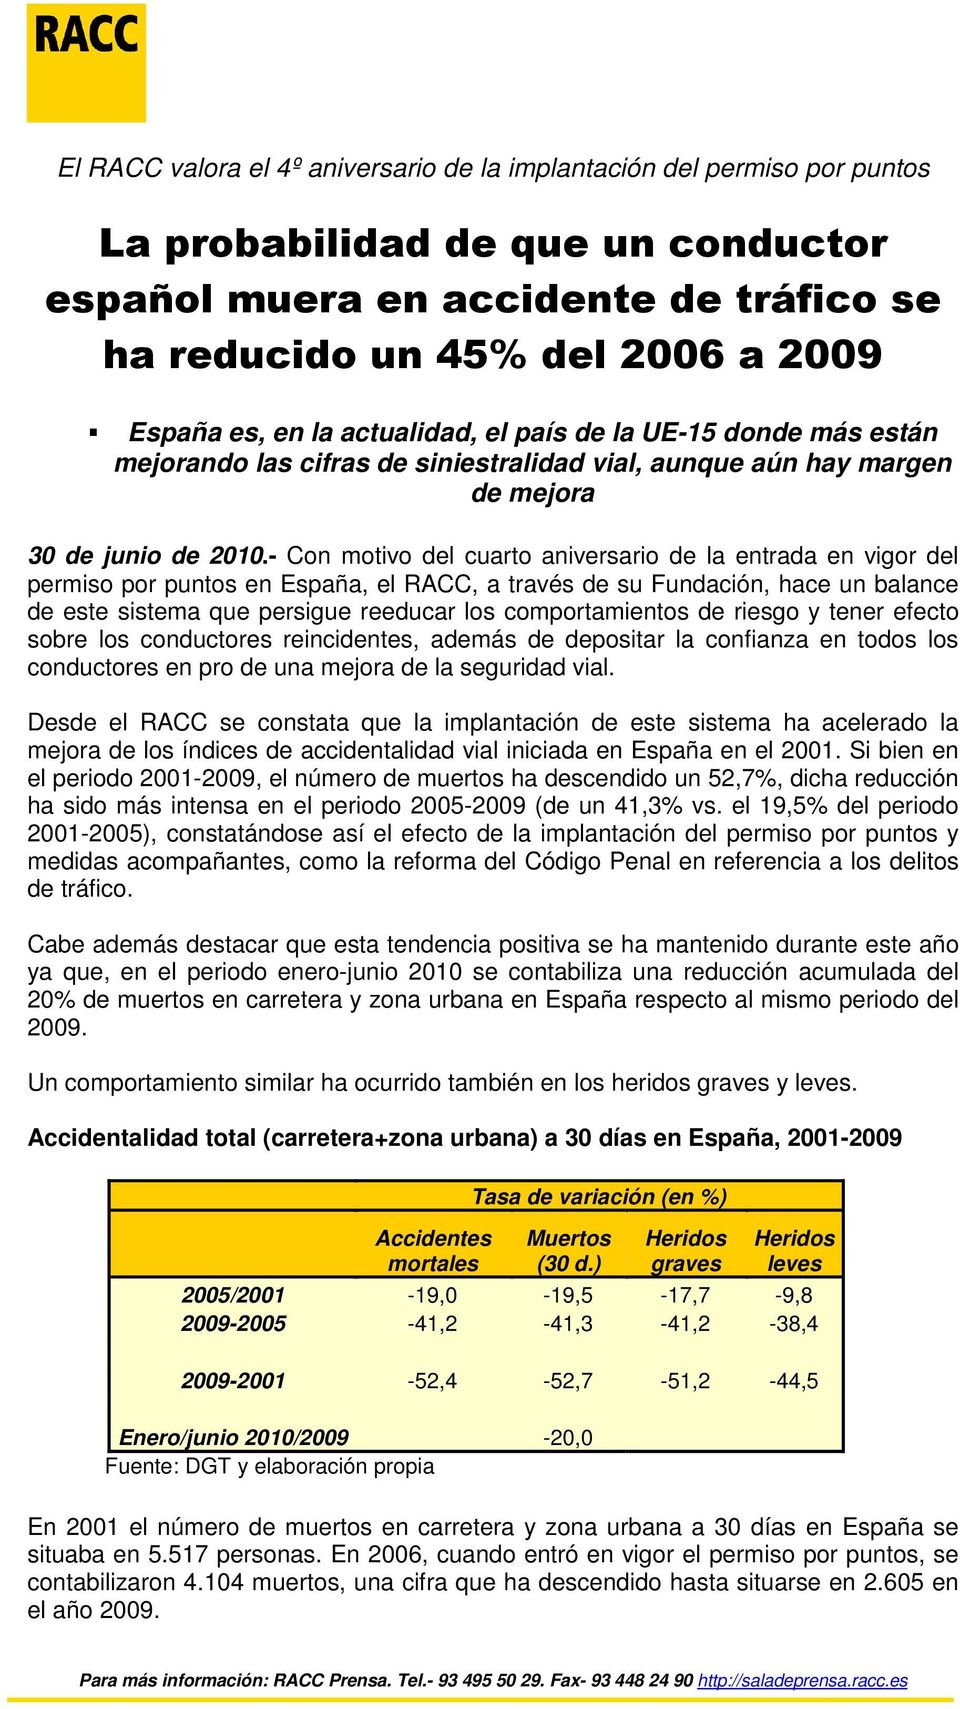 - Con motivo del cuarto aniversario de la entrada en vigor del permiso por puntos en España, el RACC, a través de su Fundación, hace un balance de este sistema que persigue reeducar los